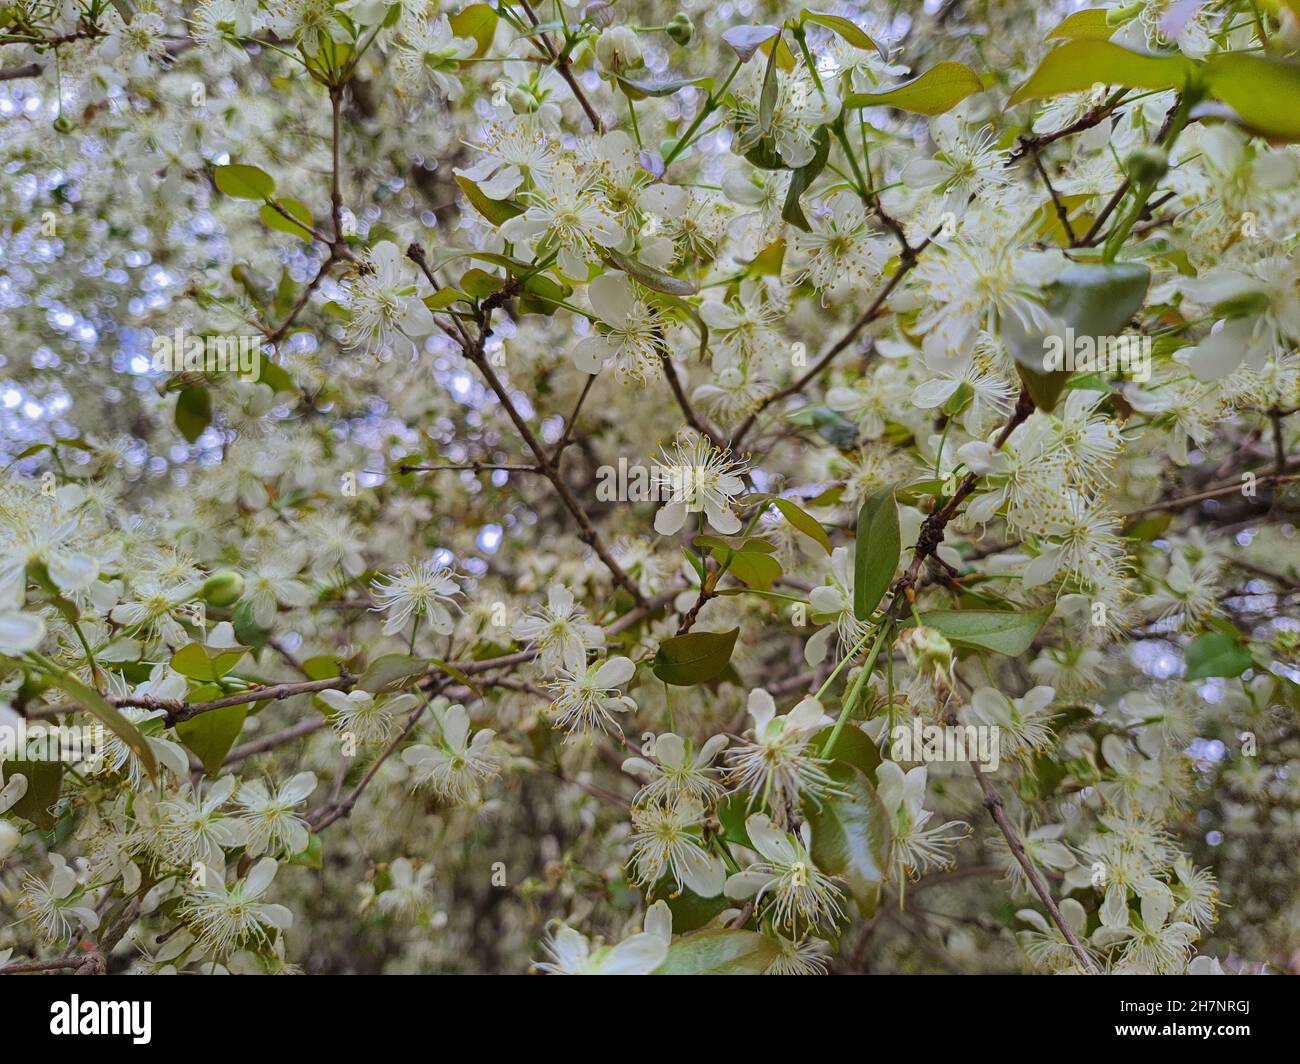 Albero con fiore di ciliegio Surinamese o Pitanga in un giardino, (Myrtaceae da Suriname) è un albero nativo della Foresta Atlantica Brasiliana. Foto Stock